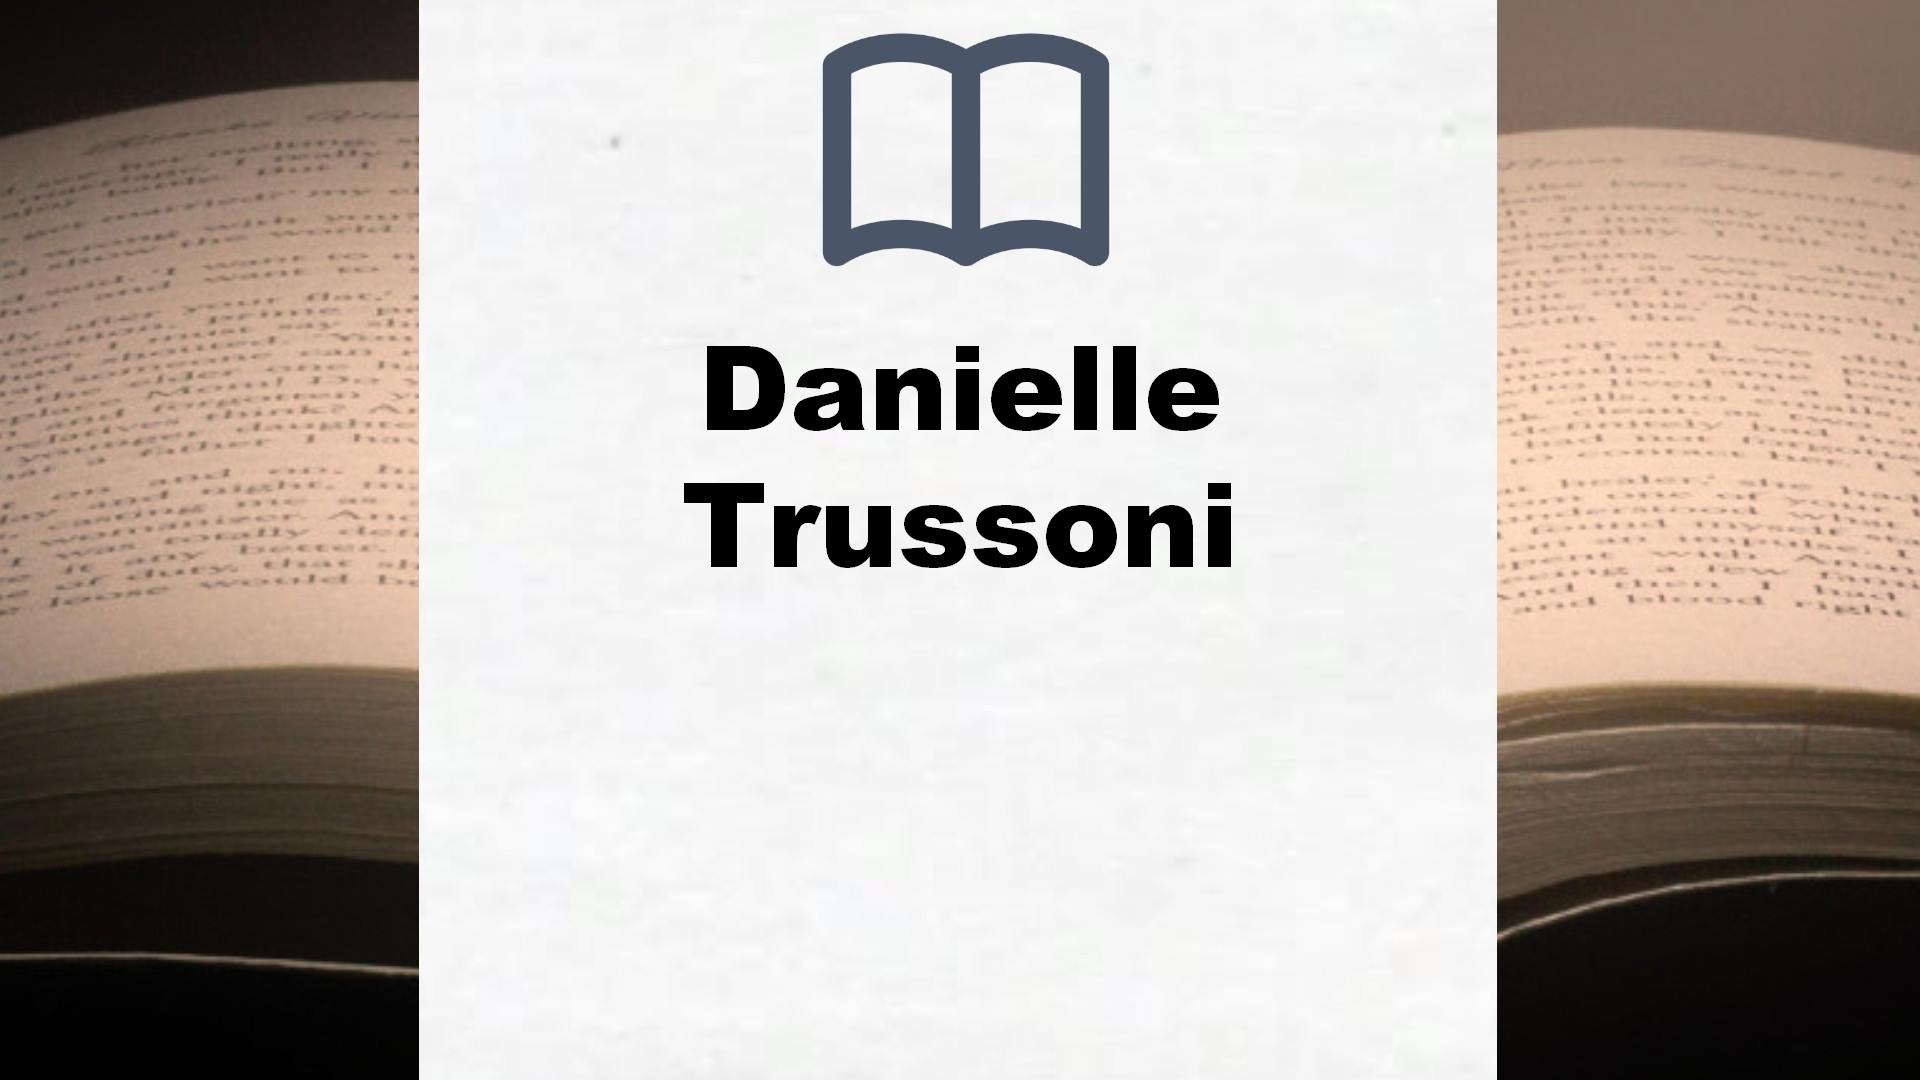 Libros Danielle Trussoni